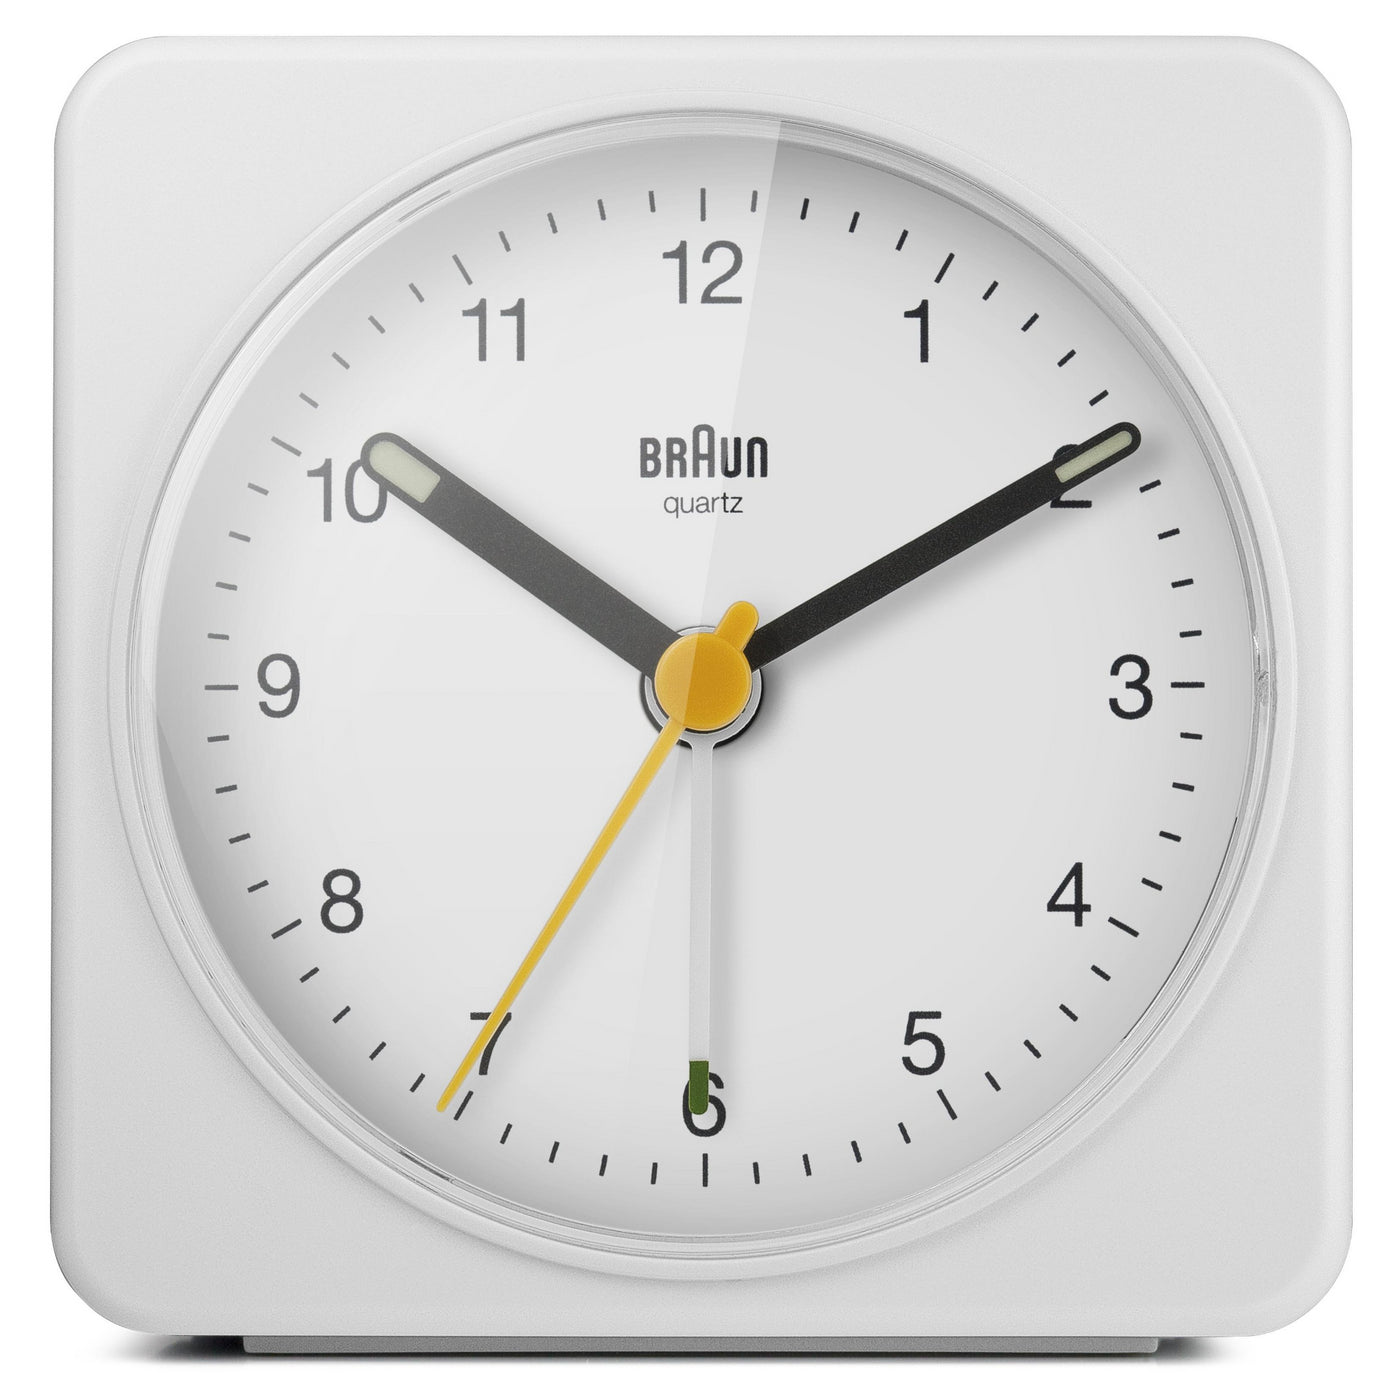 Braun Large Travel Analogue Alarm Clock – White/White